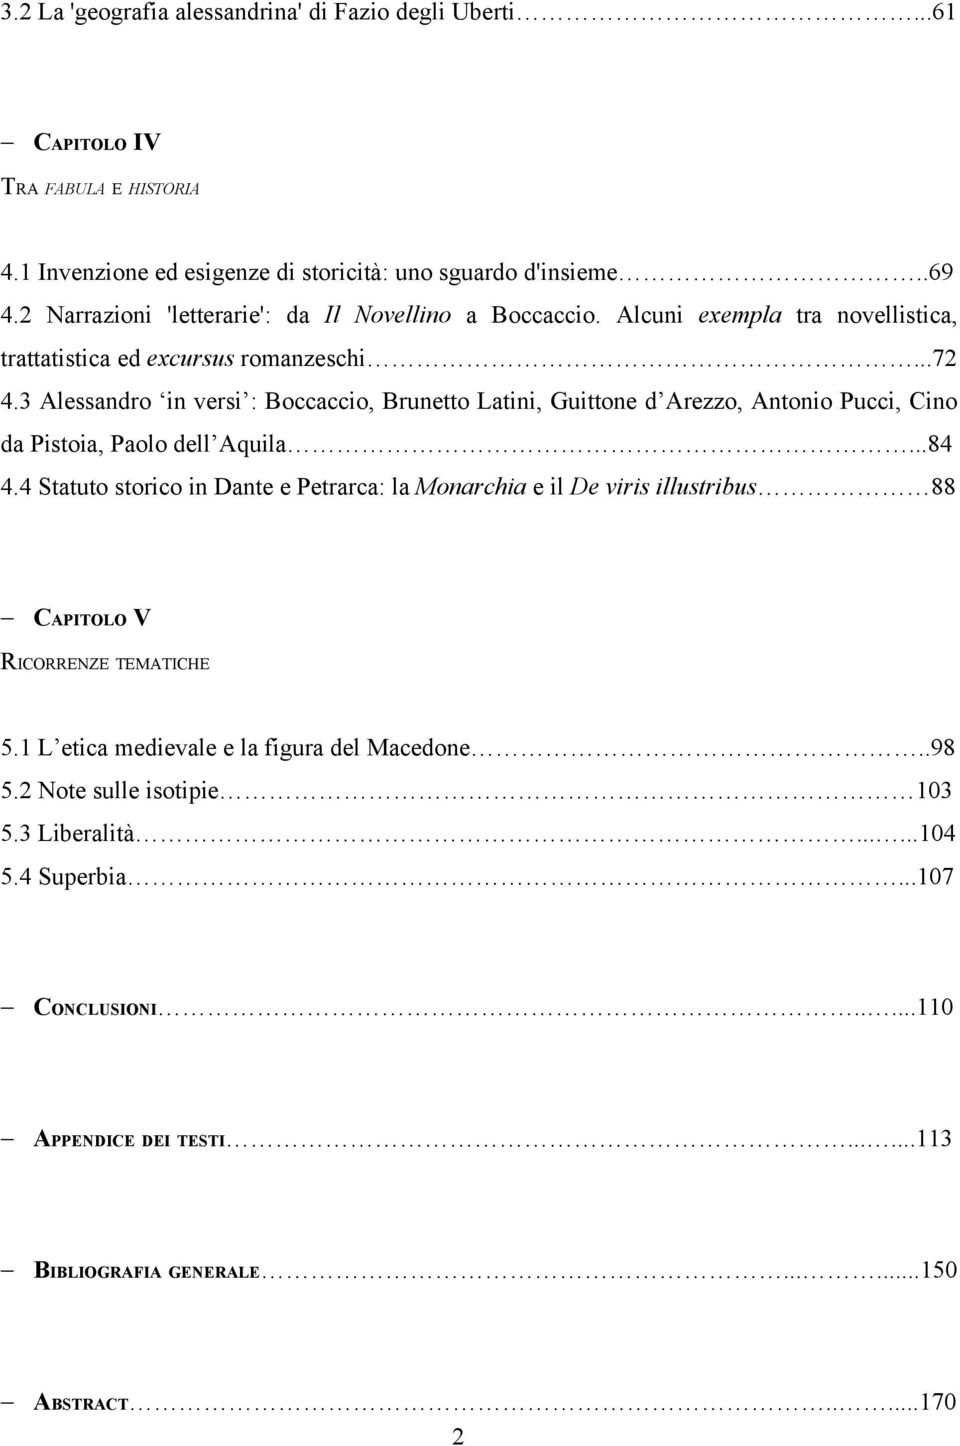 Alessandro Magno Nella Letteratura Italiana Del Duecento E Trecento Pdf Download Gratuito